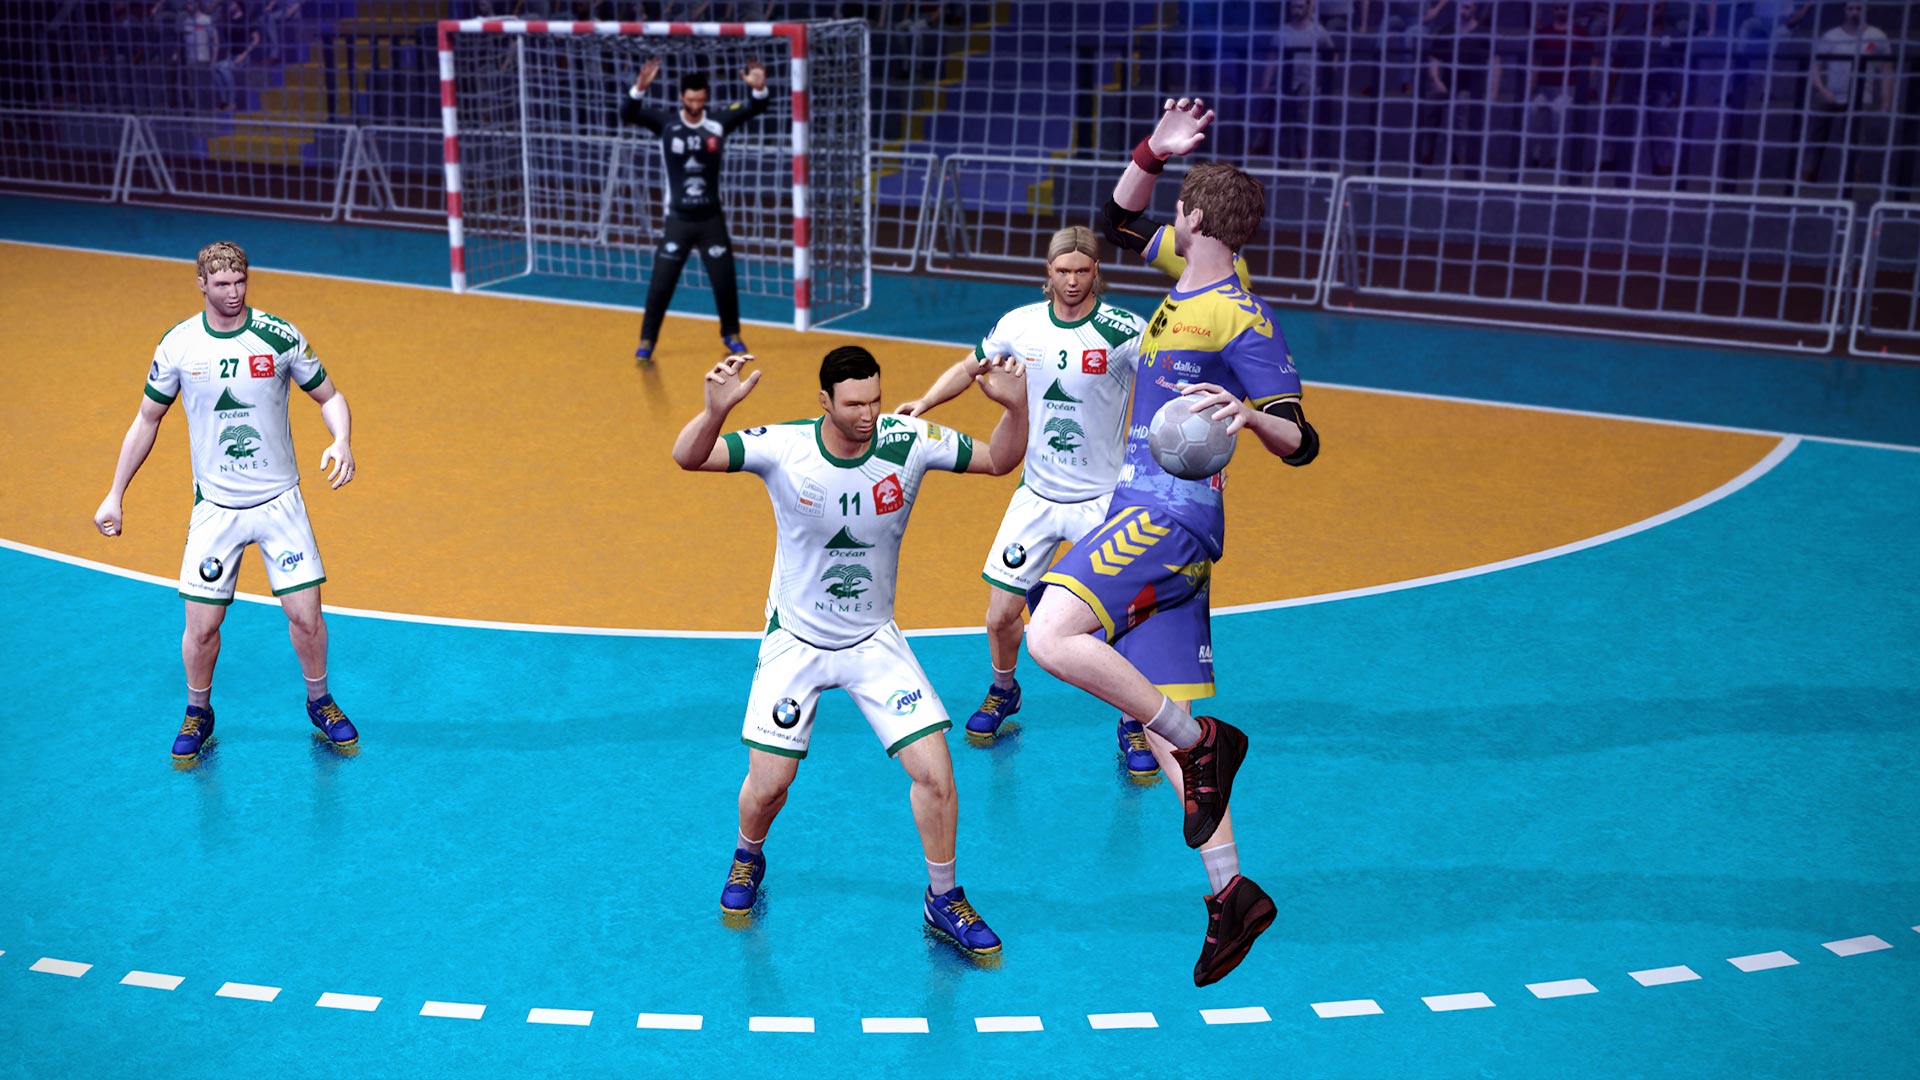 Handball 17 on Steam